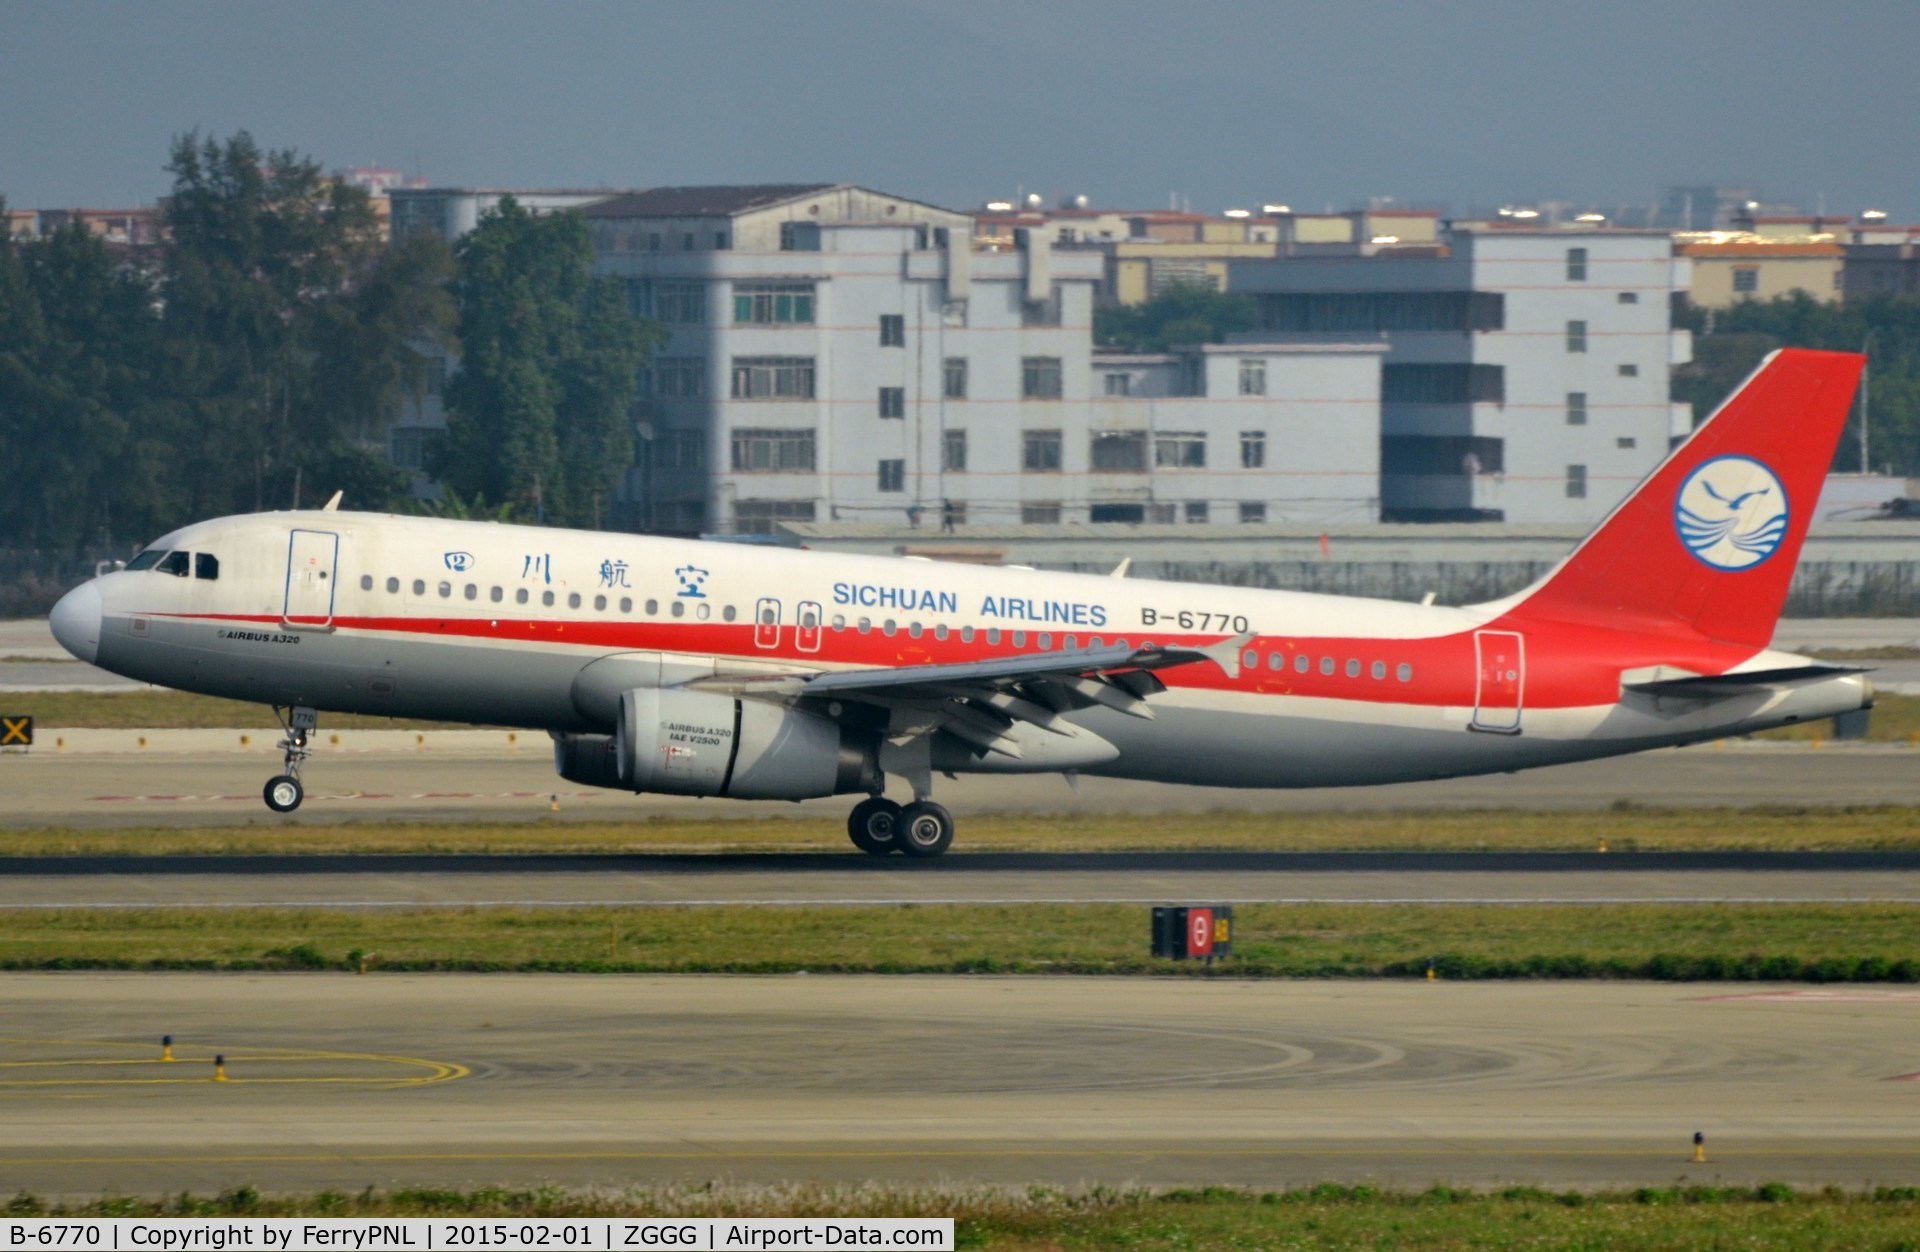 B-6770, 2011 Airbus A320-232 C/N 4642, Sichuan A320 landing